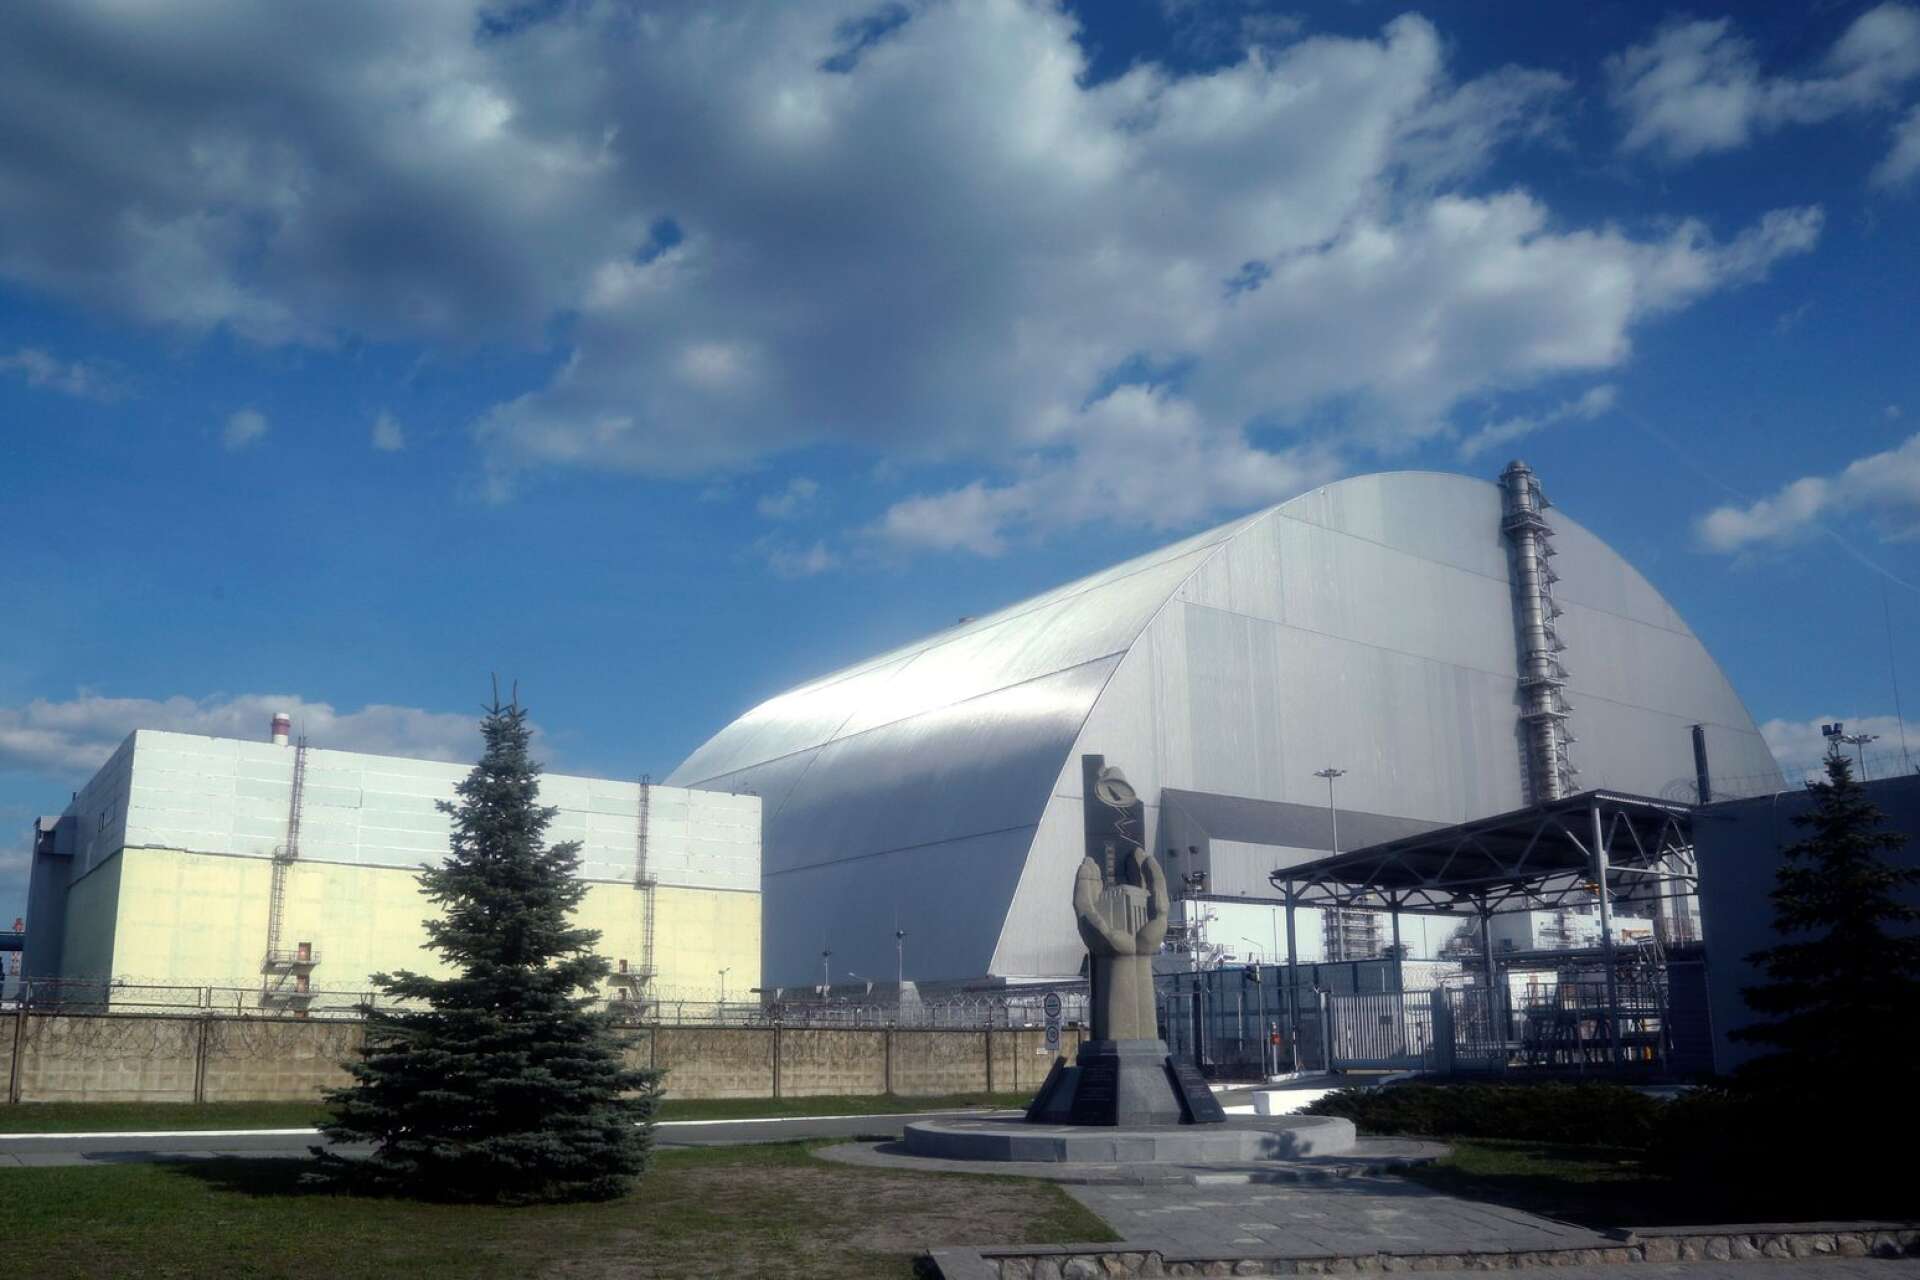 Tekniken lär av olyckor och förbättras. En kärnkraftsolycka lik den i Tjernobyl skulle i dag inte hända, inte ens i Ryssland, skriver Nils Ronquist.